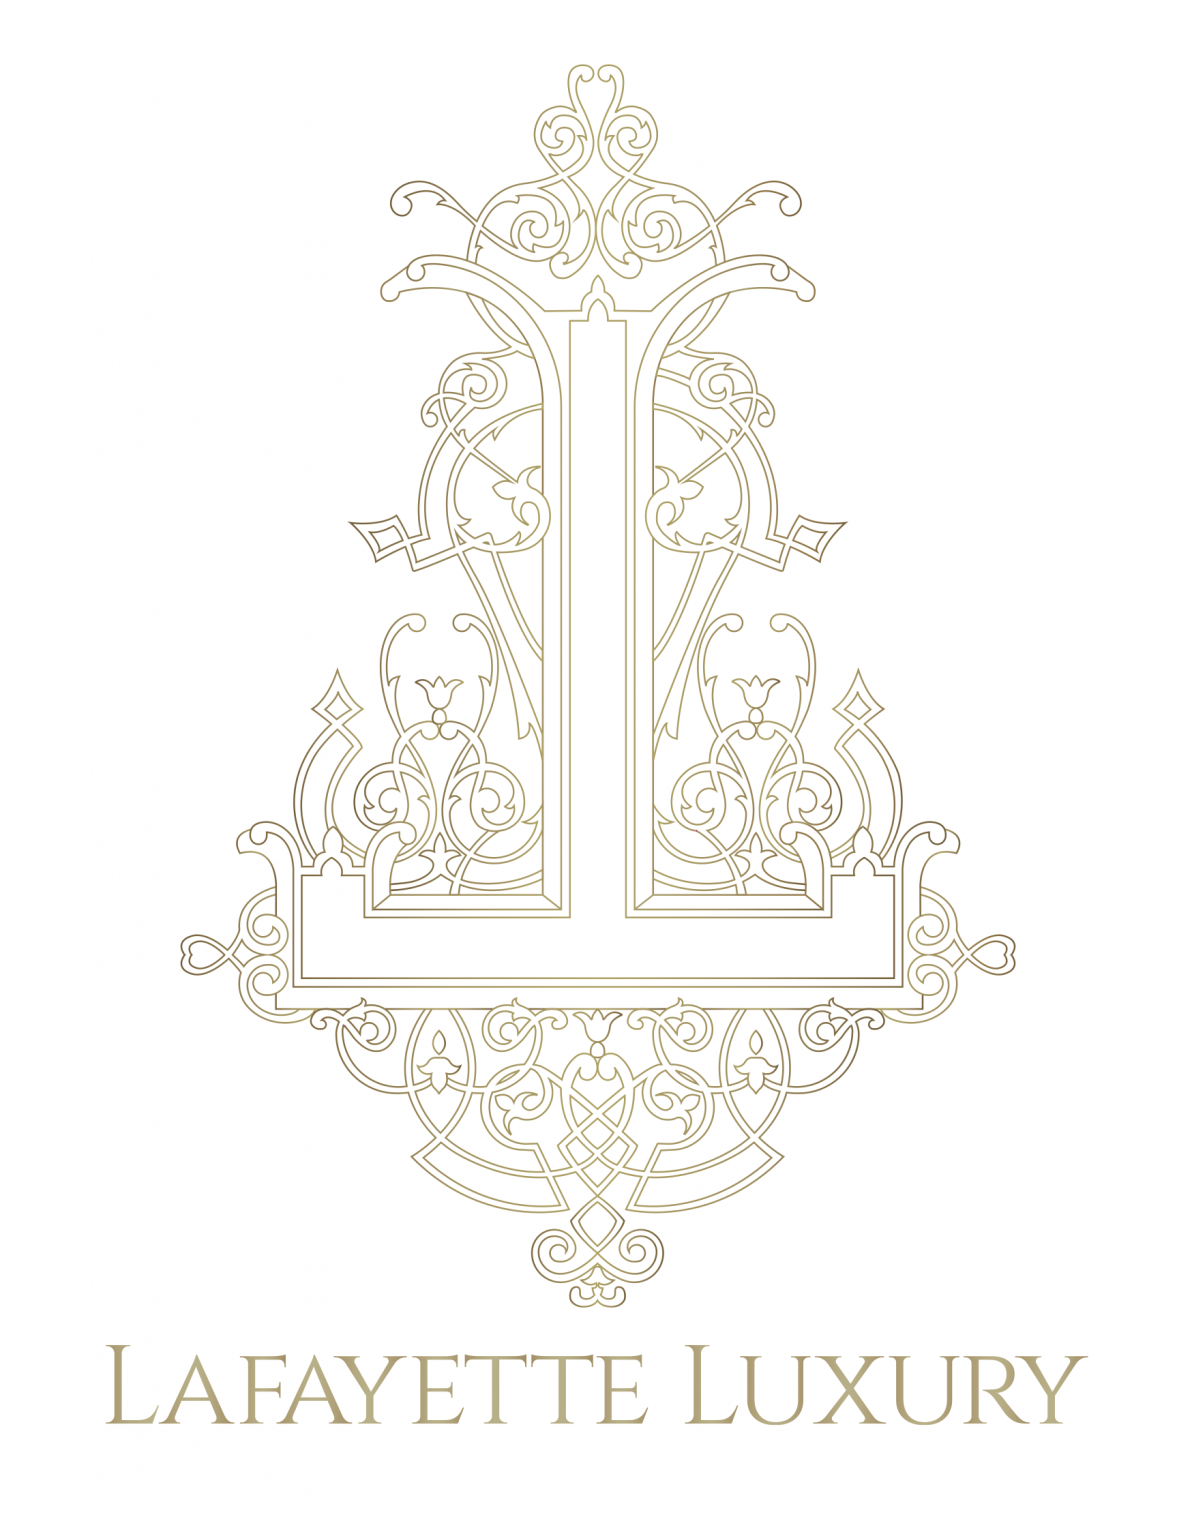 Lafayette Luxury - Luxury Lifestyle Awards